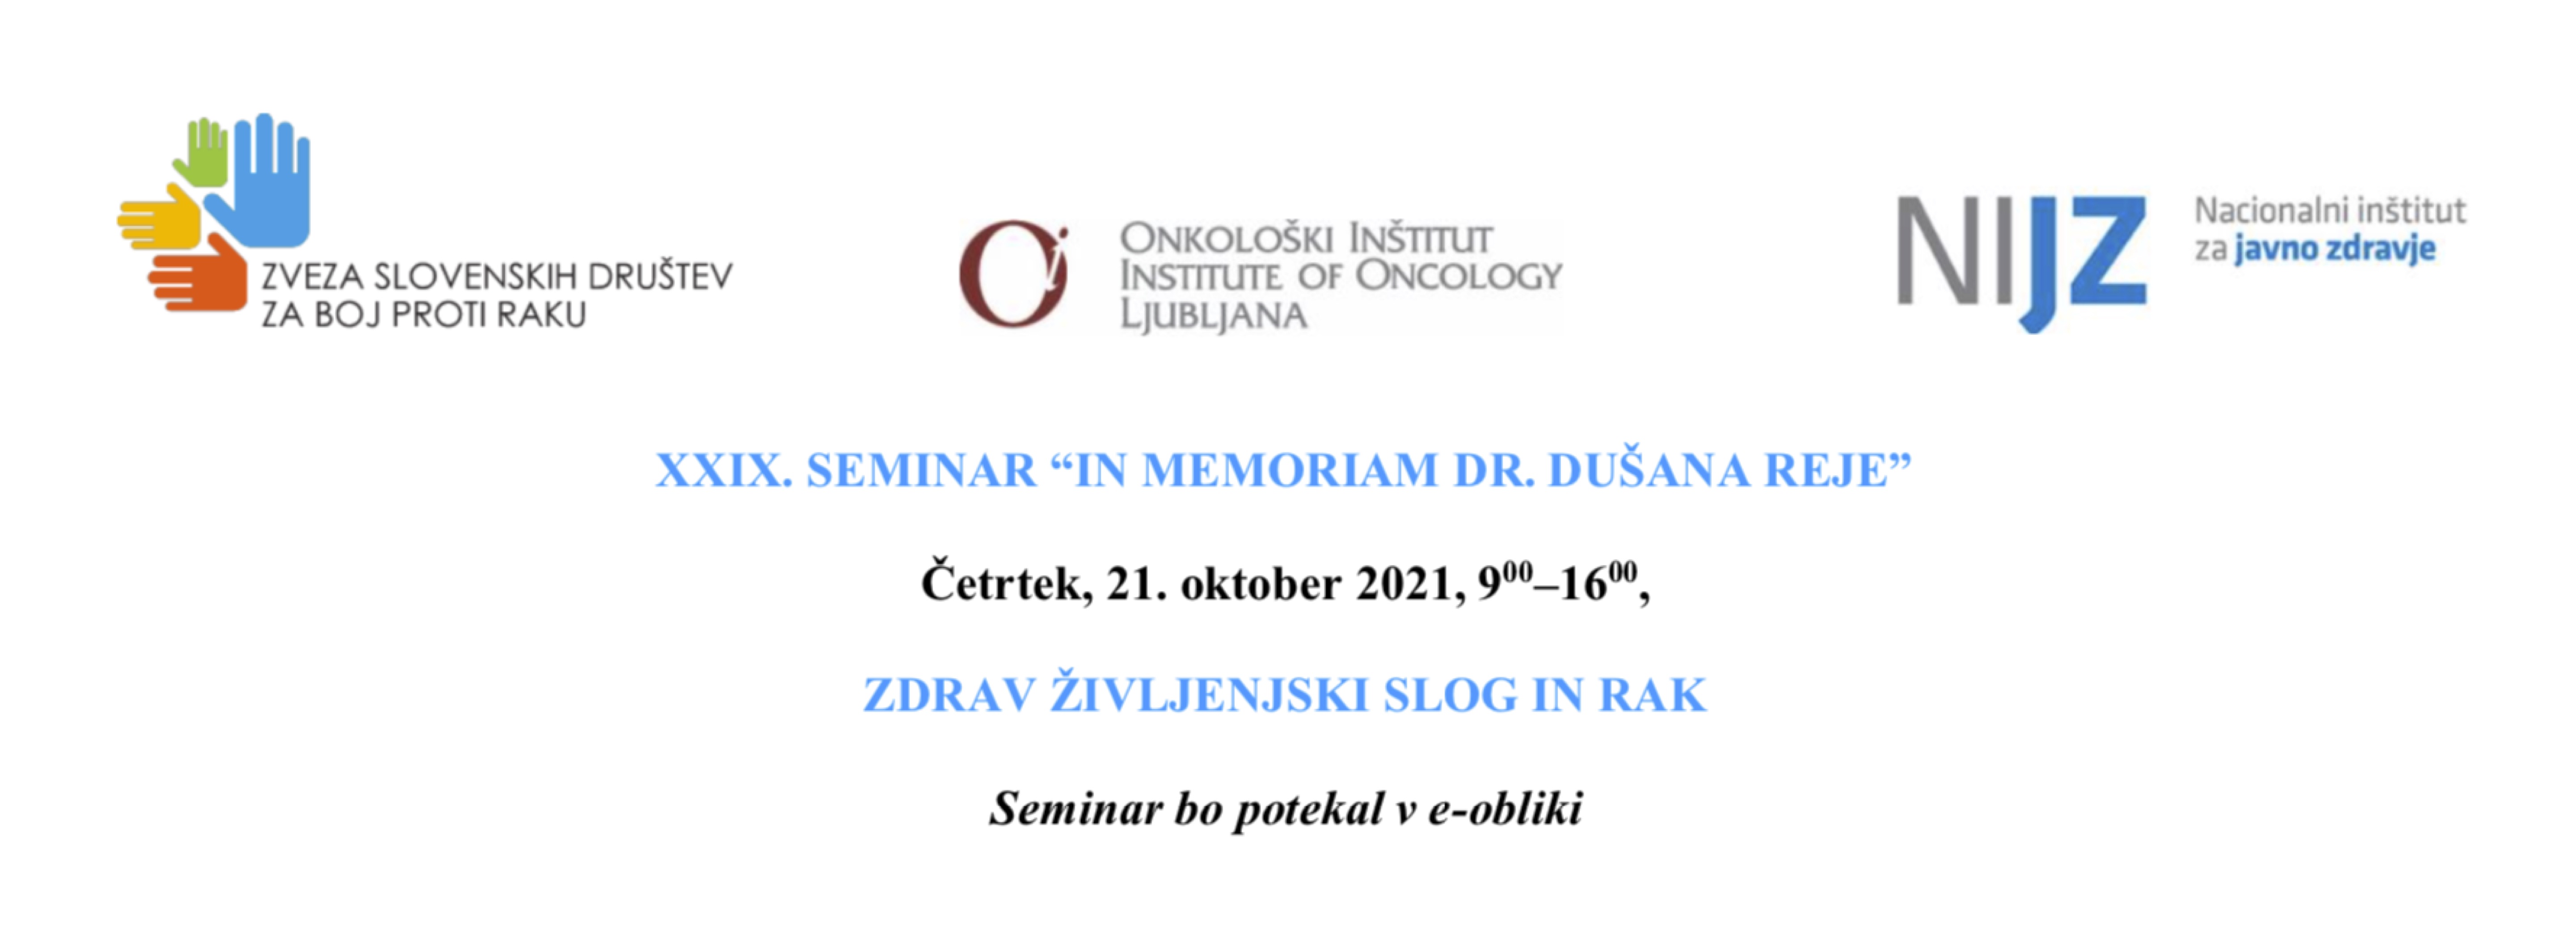 21. oktober 2021 - XXIX. e-SEMINAR "In memoriam dr. Dušana Reje"